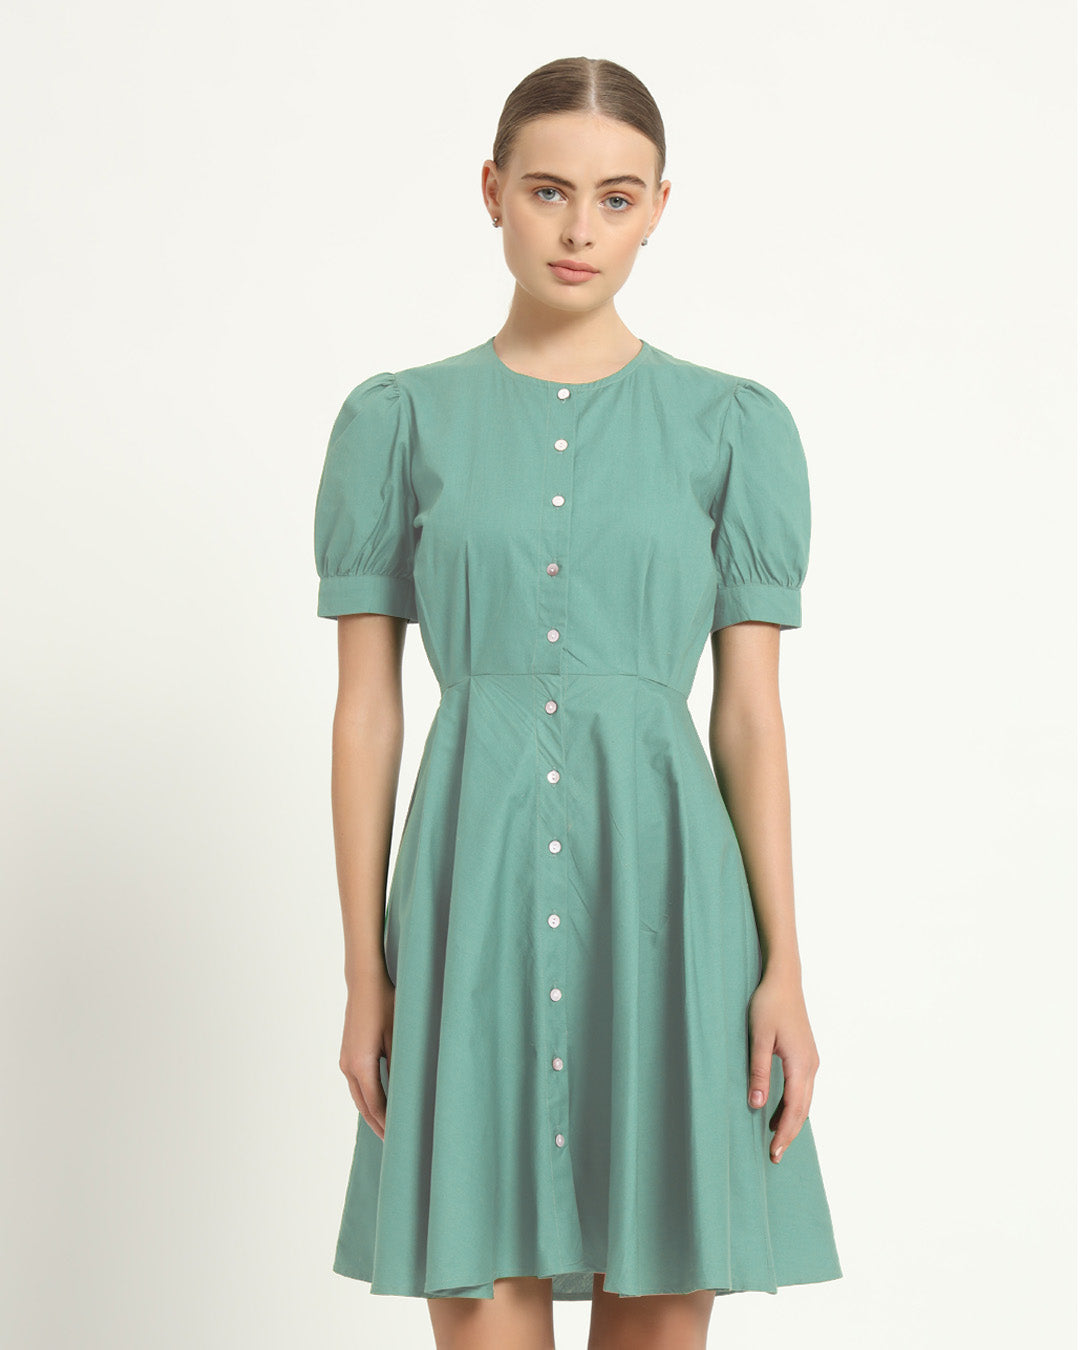 The Kittsee Mint Cotton Dress